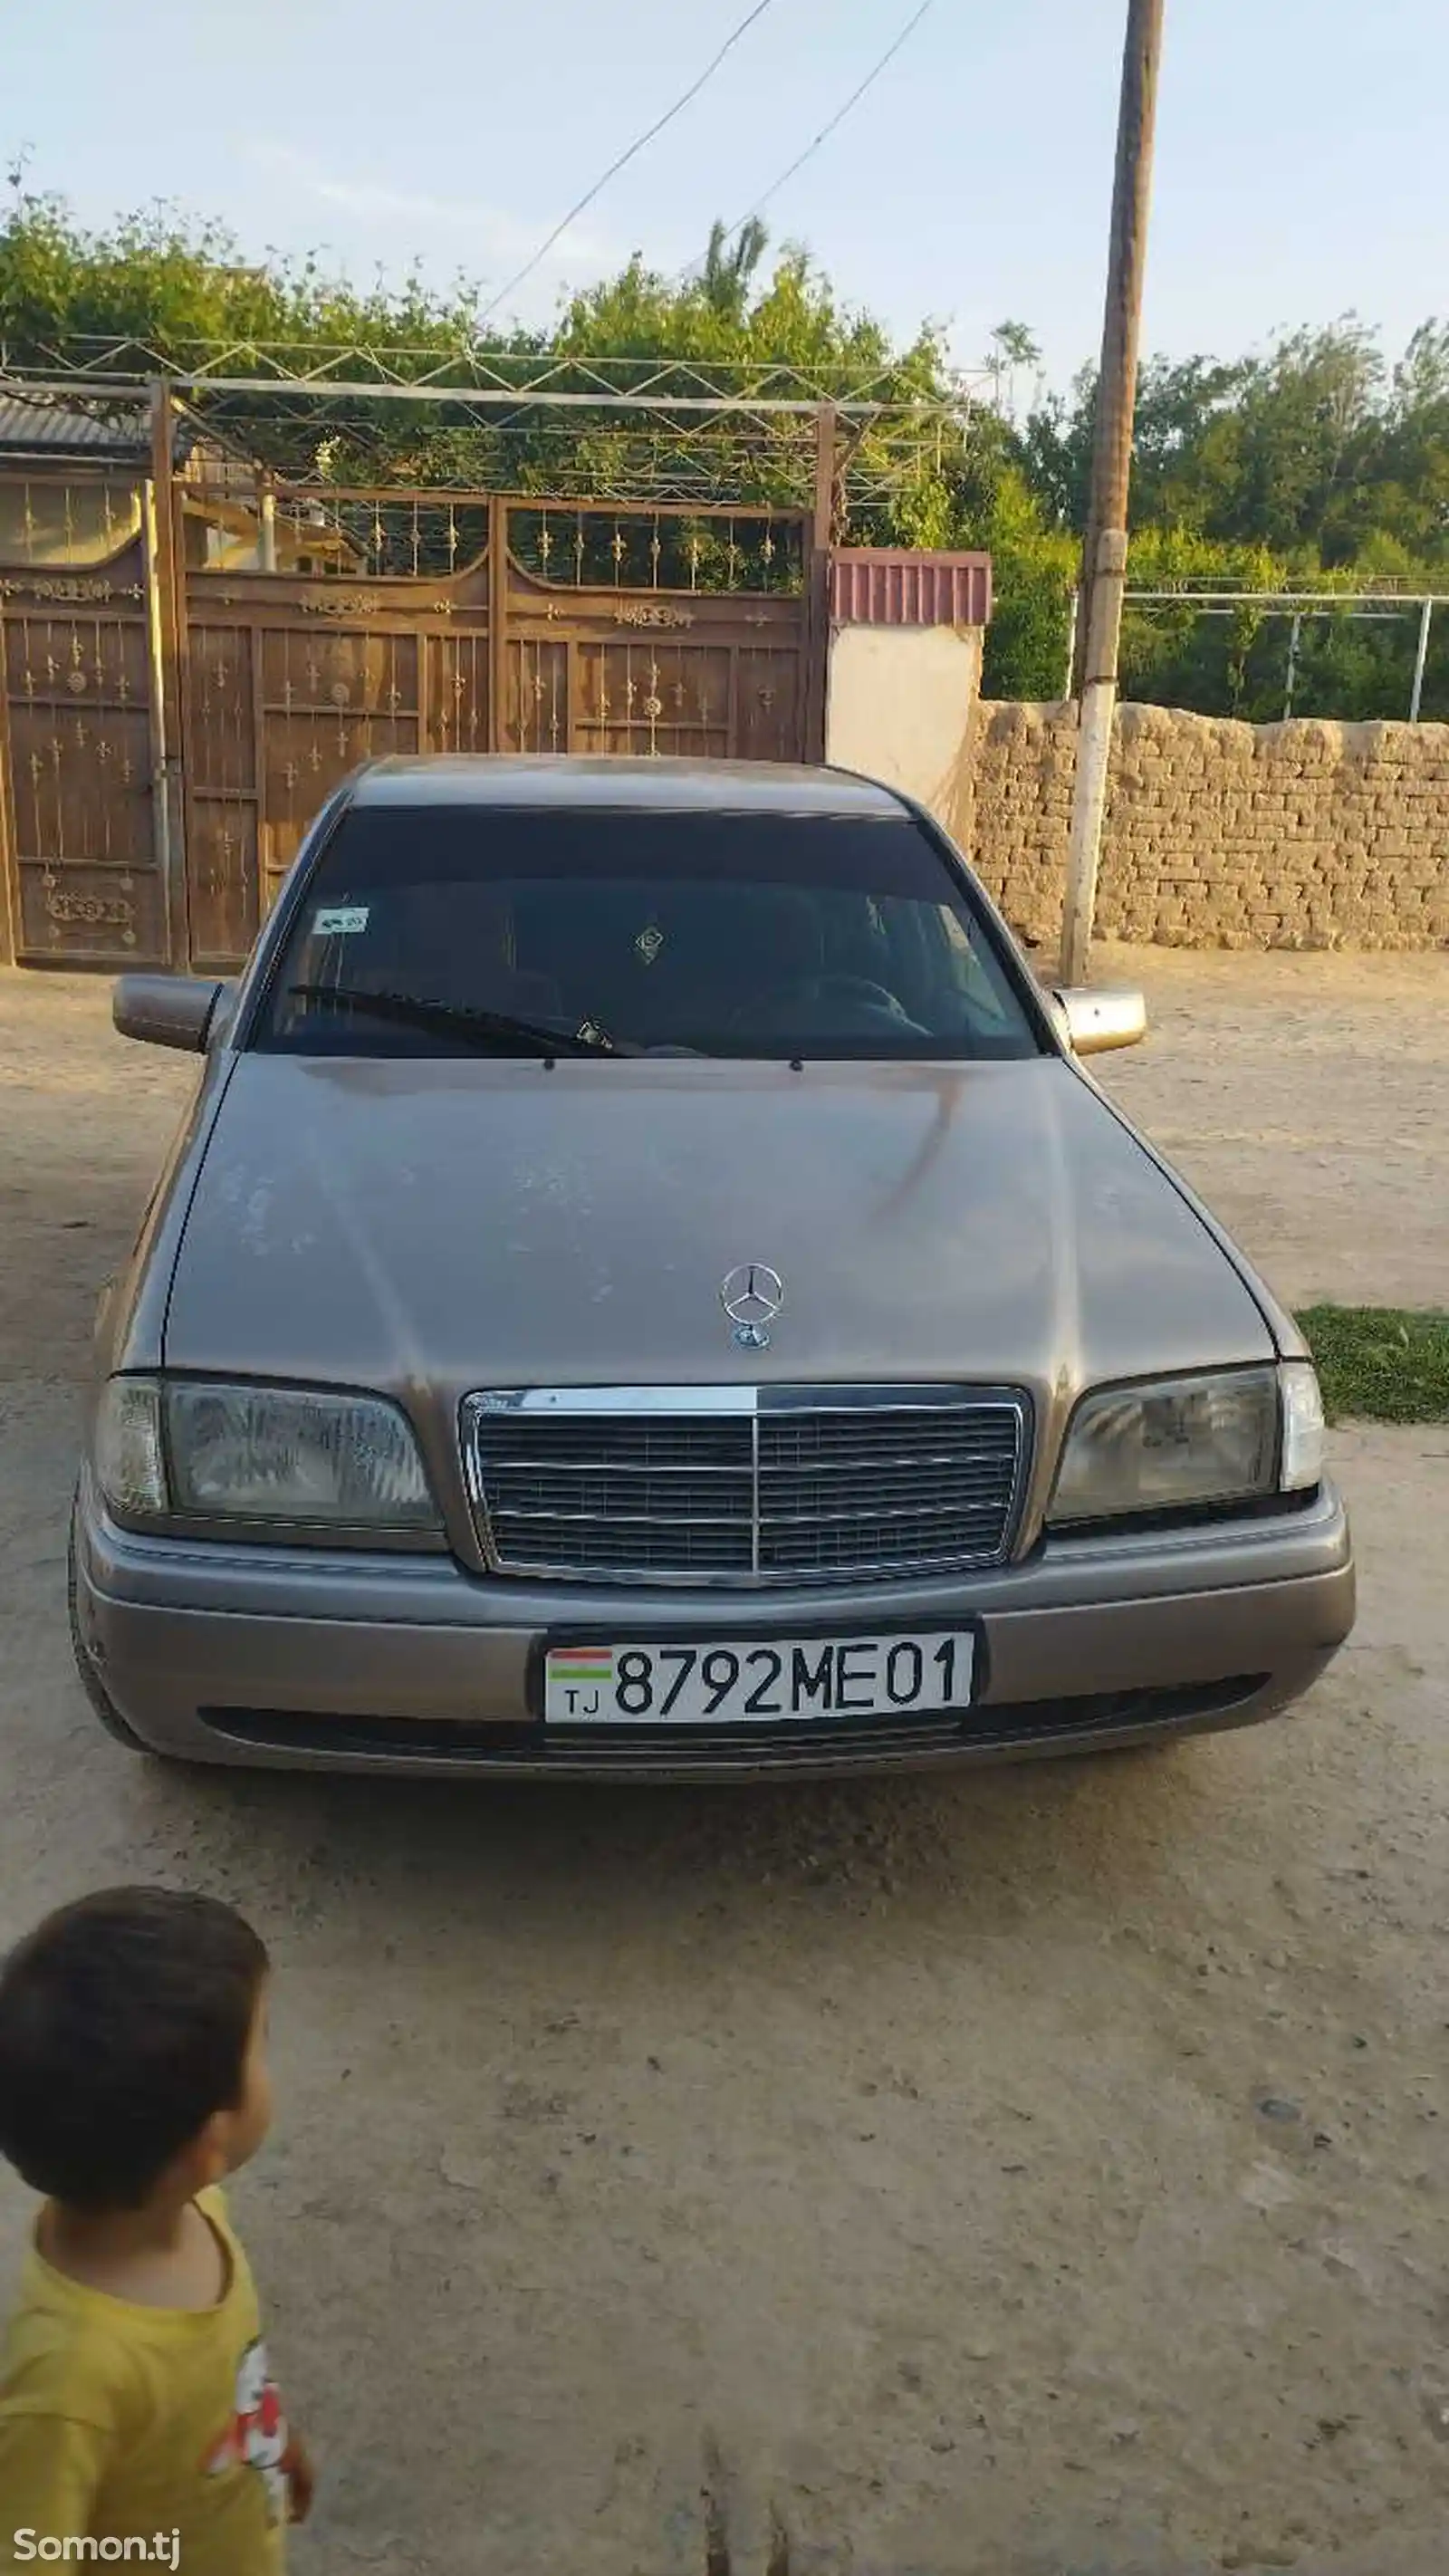 Mercedes-Benz C class, 1993-1